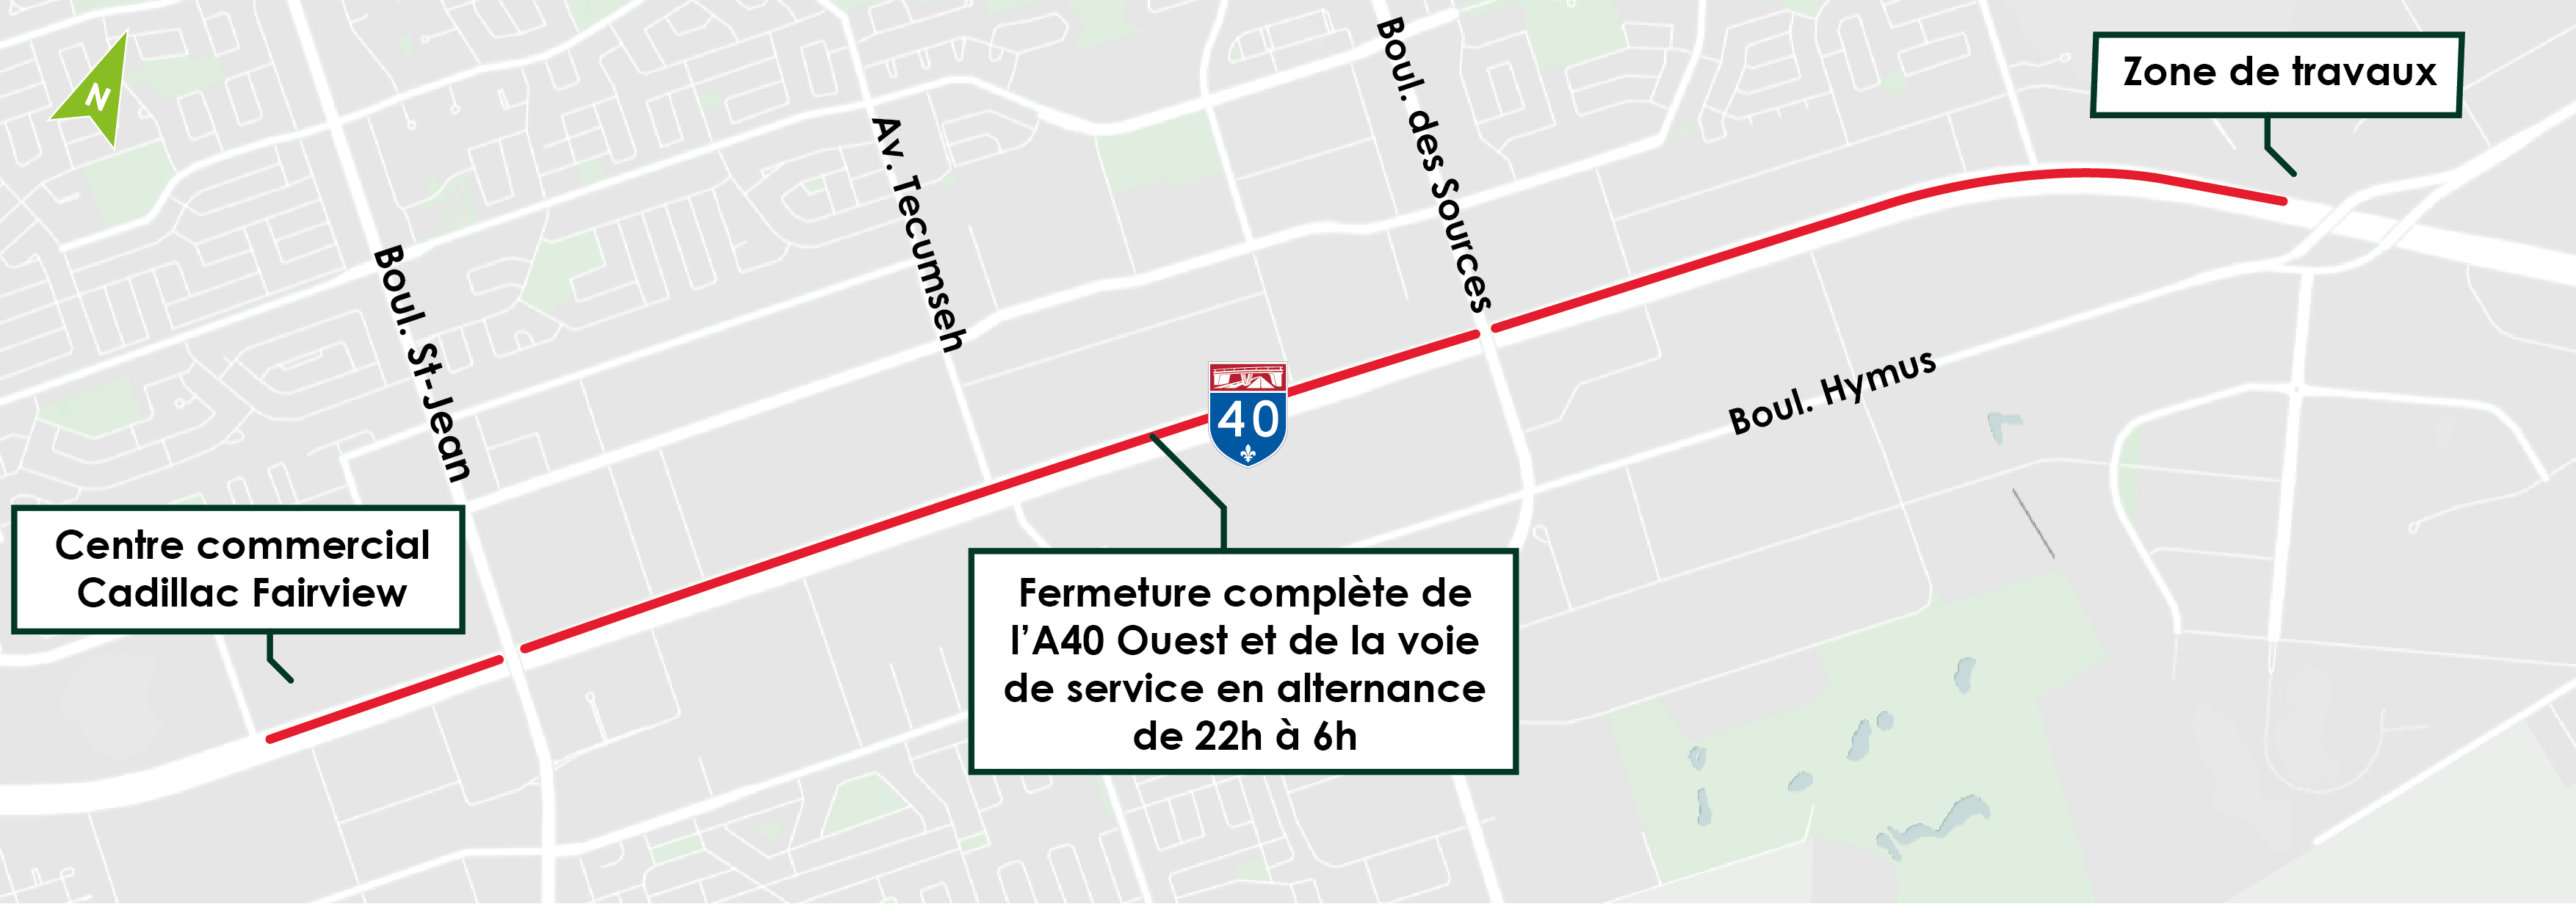 En alternance sur l’autoroute 40 Ouest et la voie de service Ouest, entre l’avenue Fairview et le boulevard Henri-Bourassa Ouest